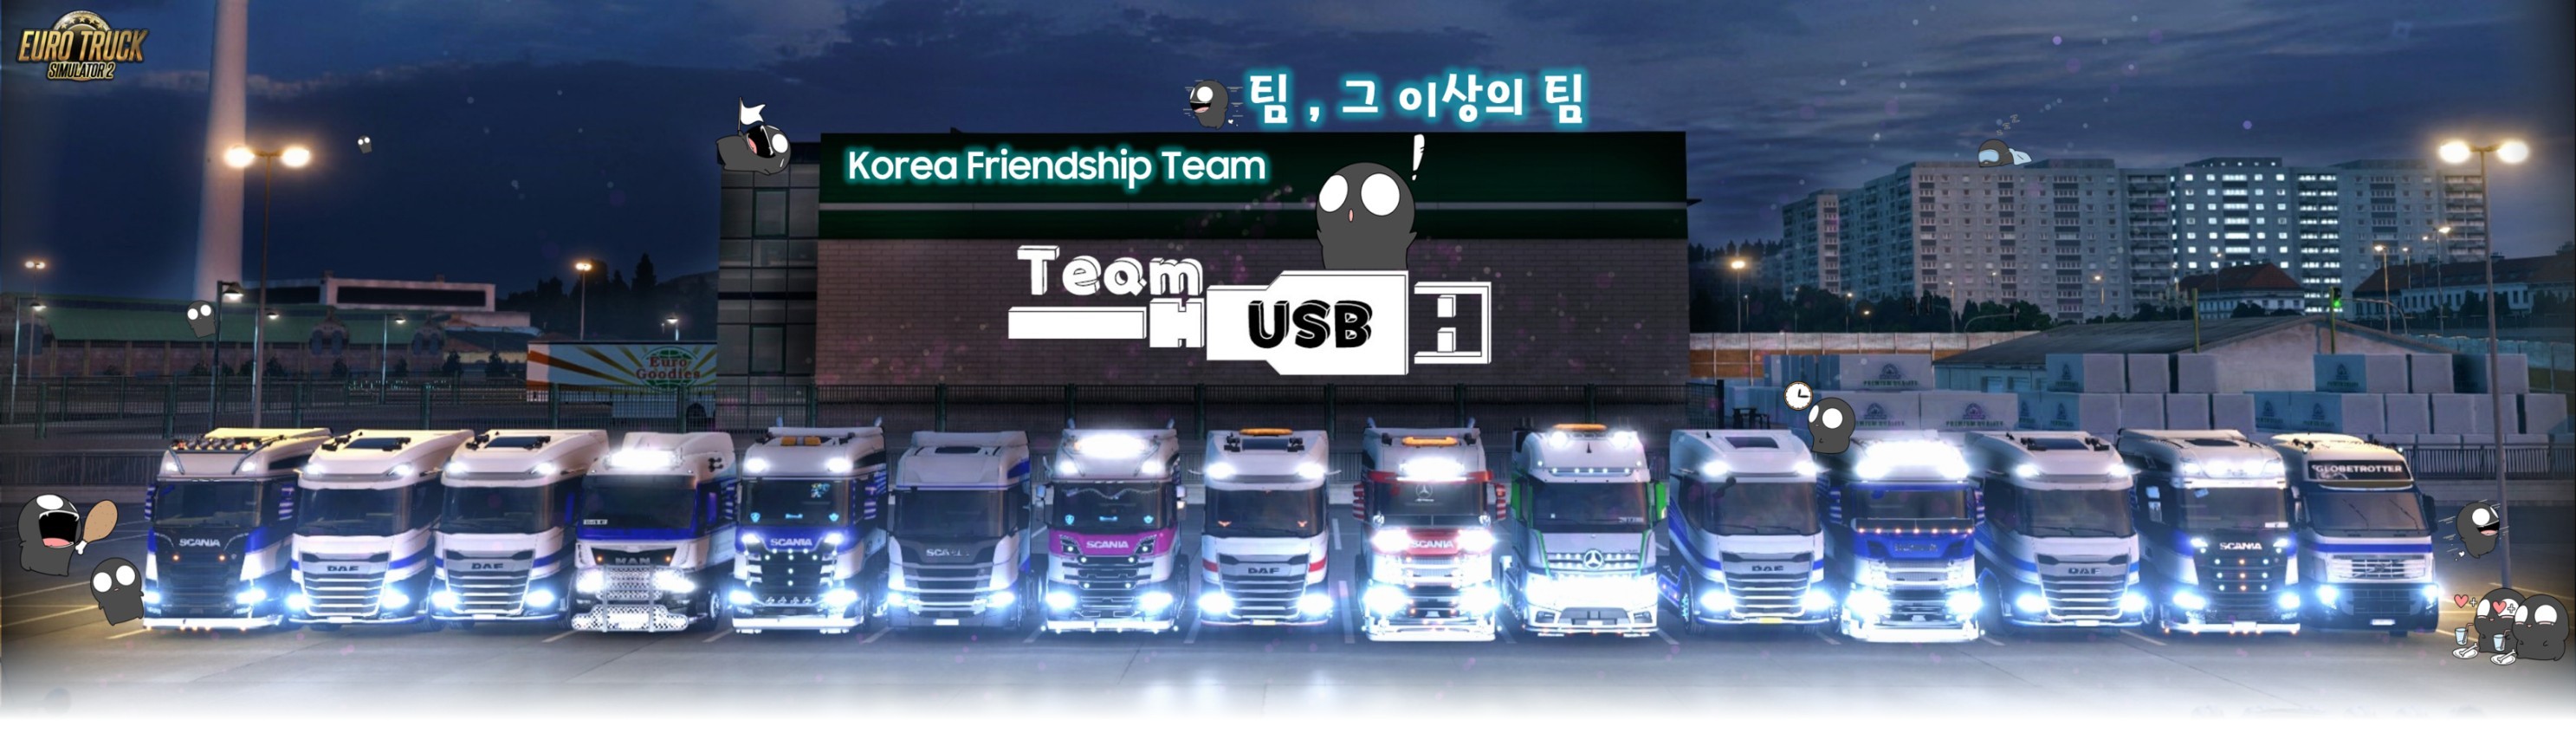 유로트럭2 대한민국 친목 팀 TeamUSB